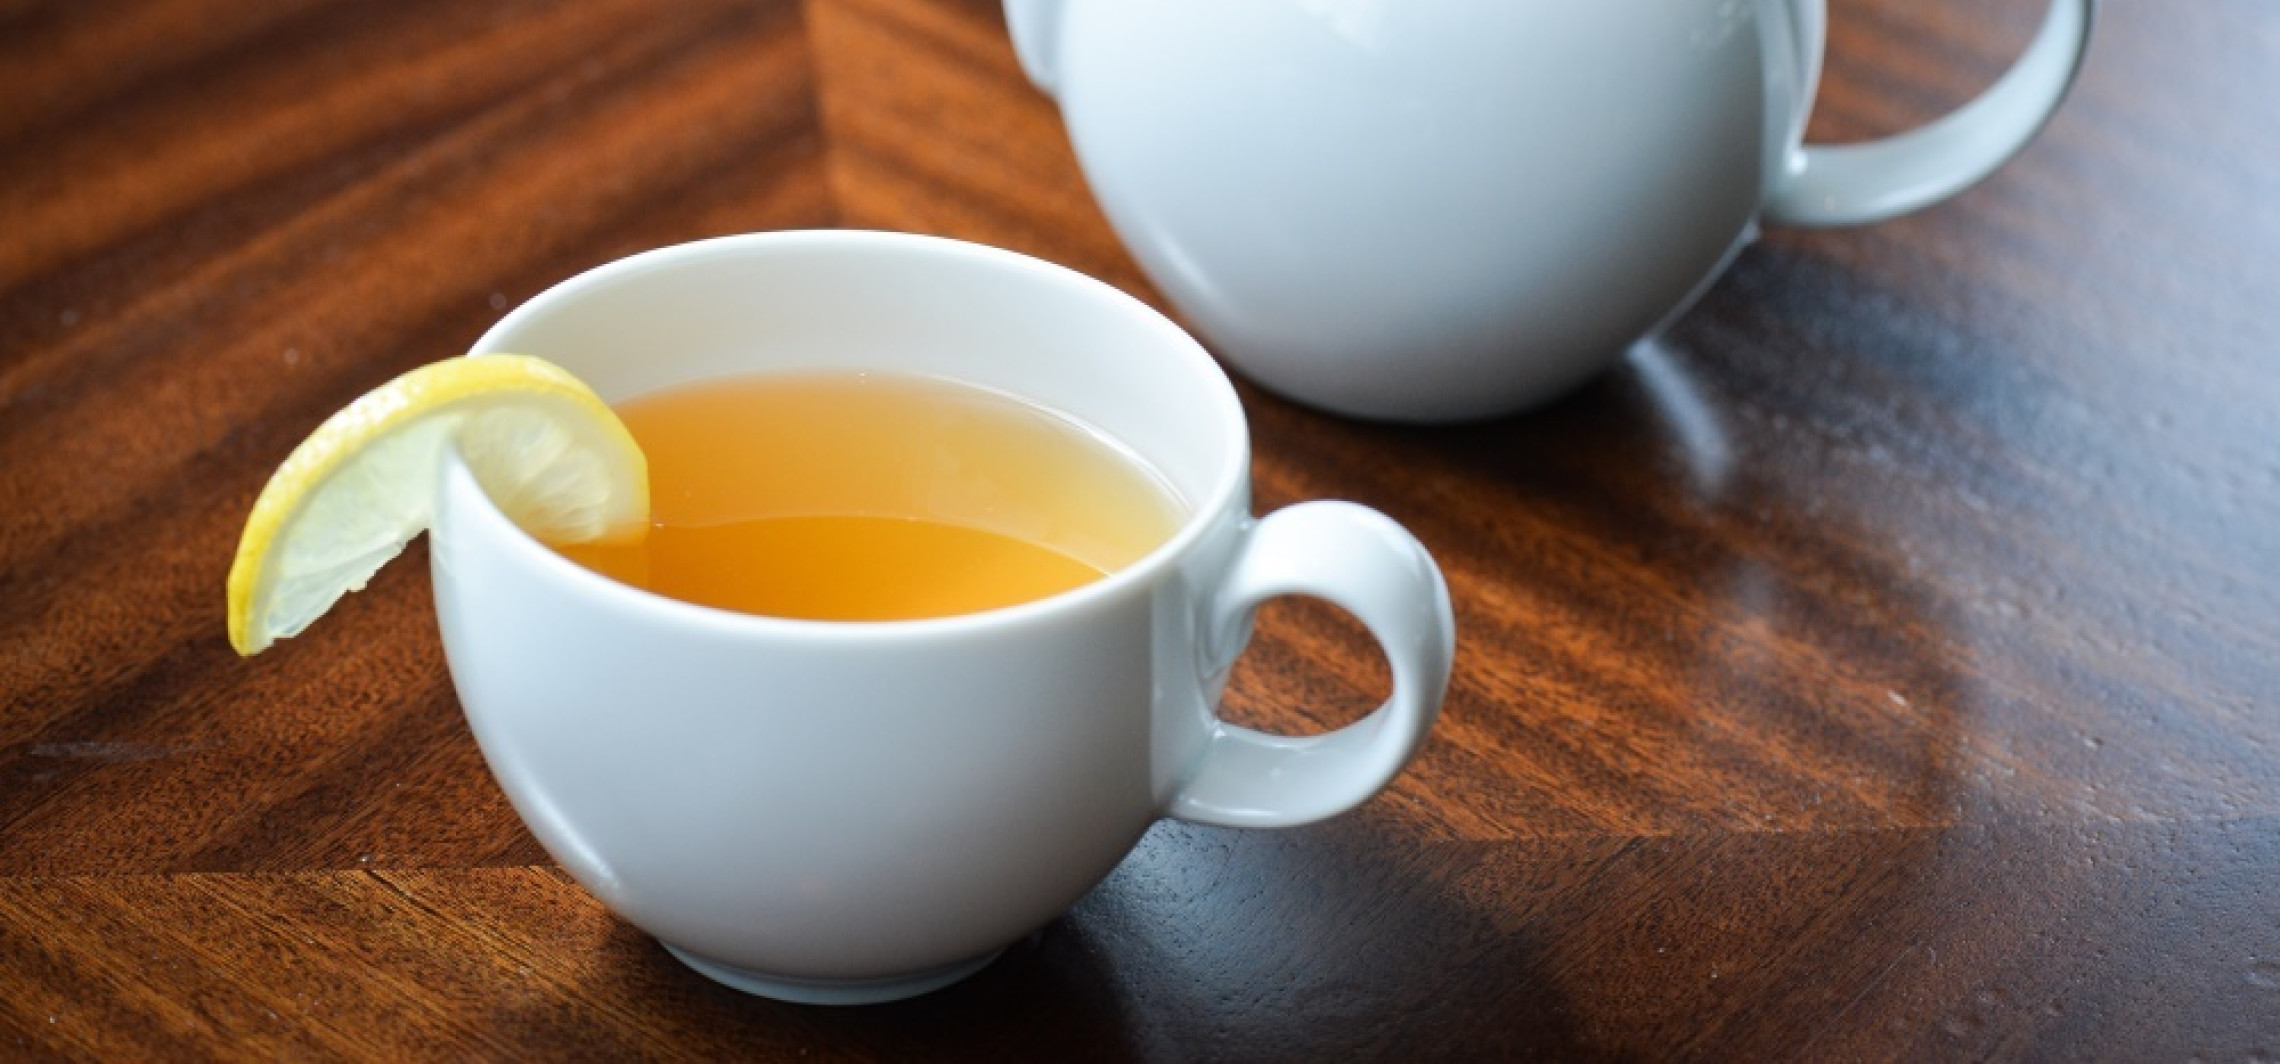 Kraj - Picie herbaty poprawia pracę mózgu